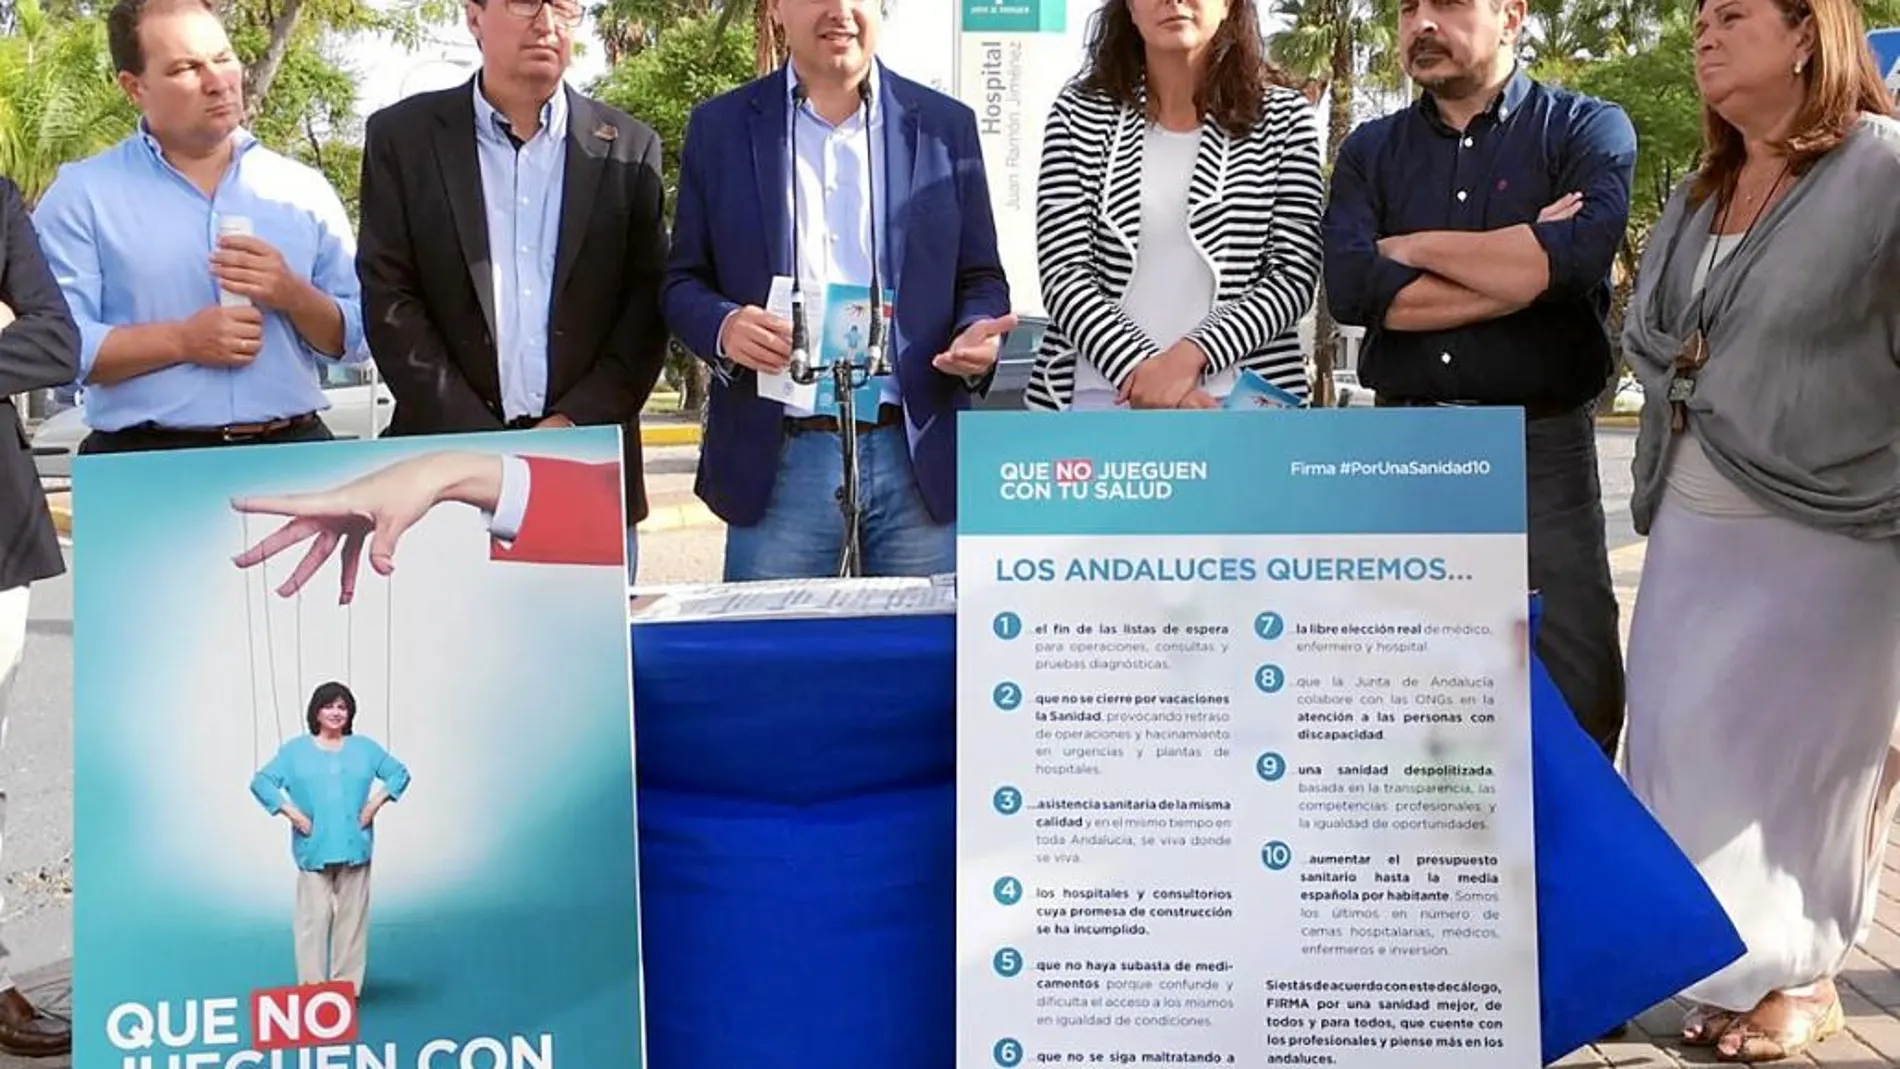 El presidente del PP-A presentó en Huelva la campaña «#PorUnaSanidad10».